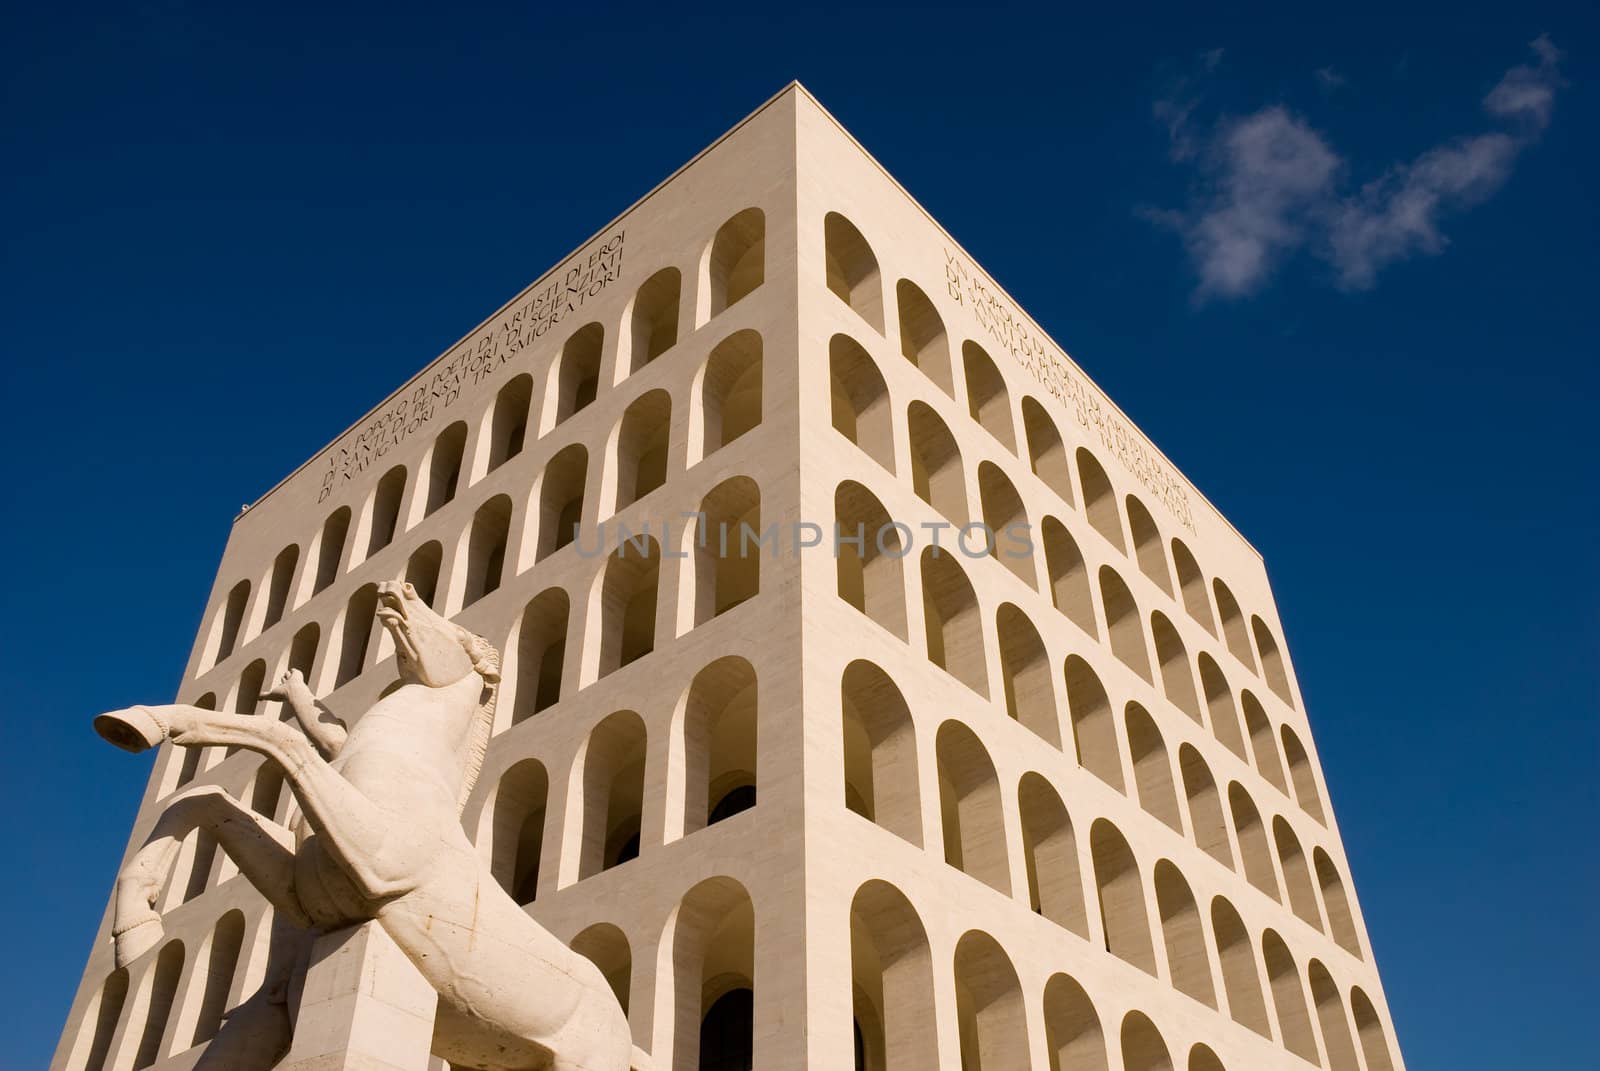 Palazzo della Civilt� del Lavoro, known as the Colosseo Quadrato (Square Colosseum), an icon of Fascist architecture. Eur, Rome, Italy